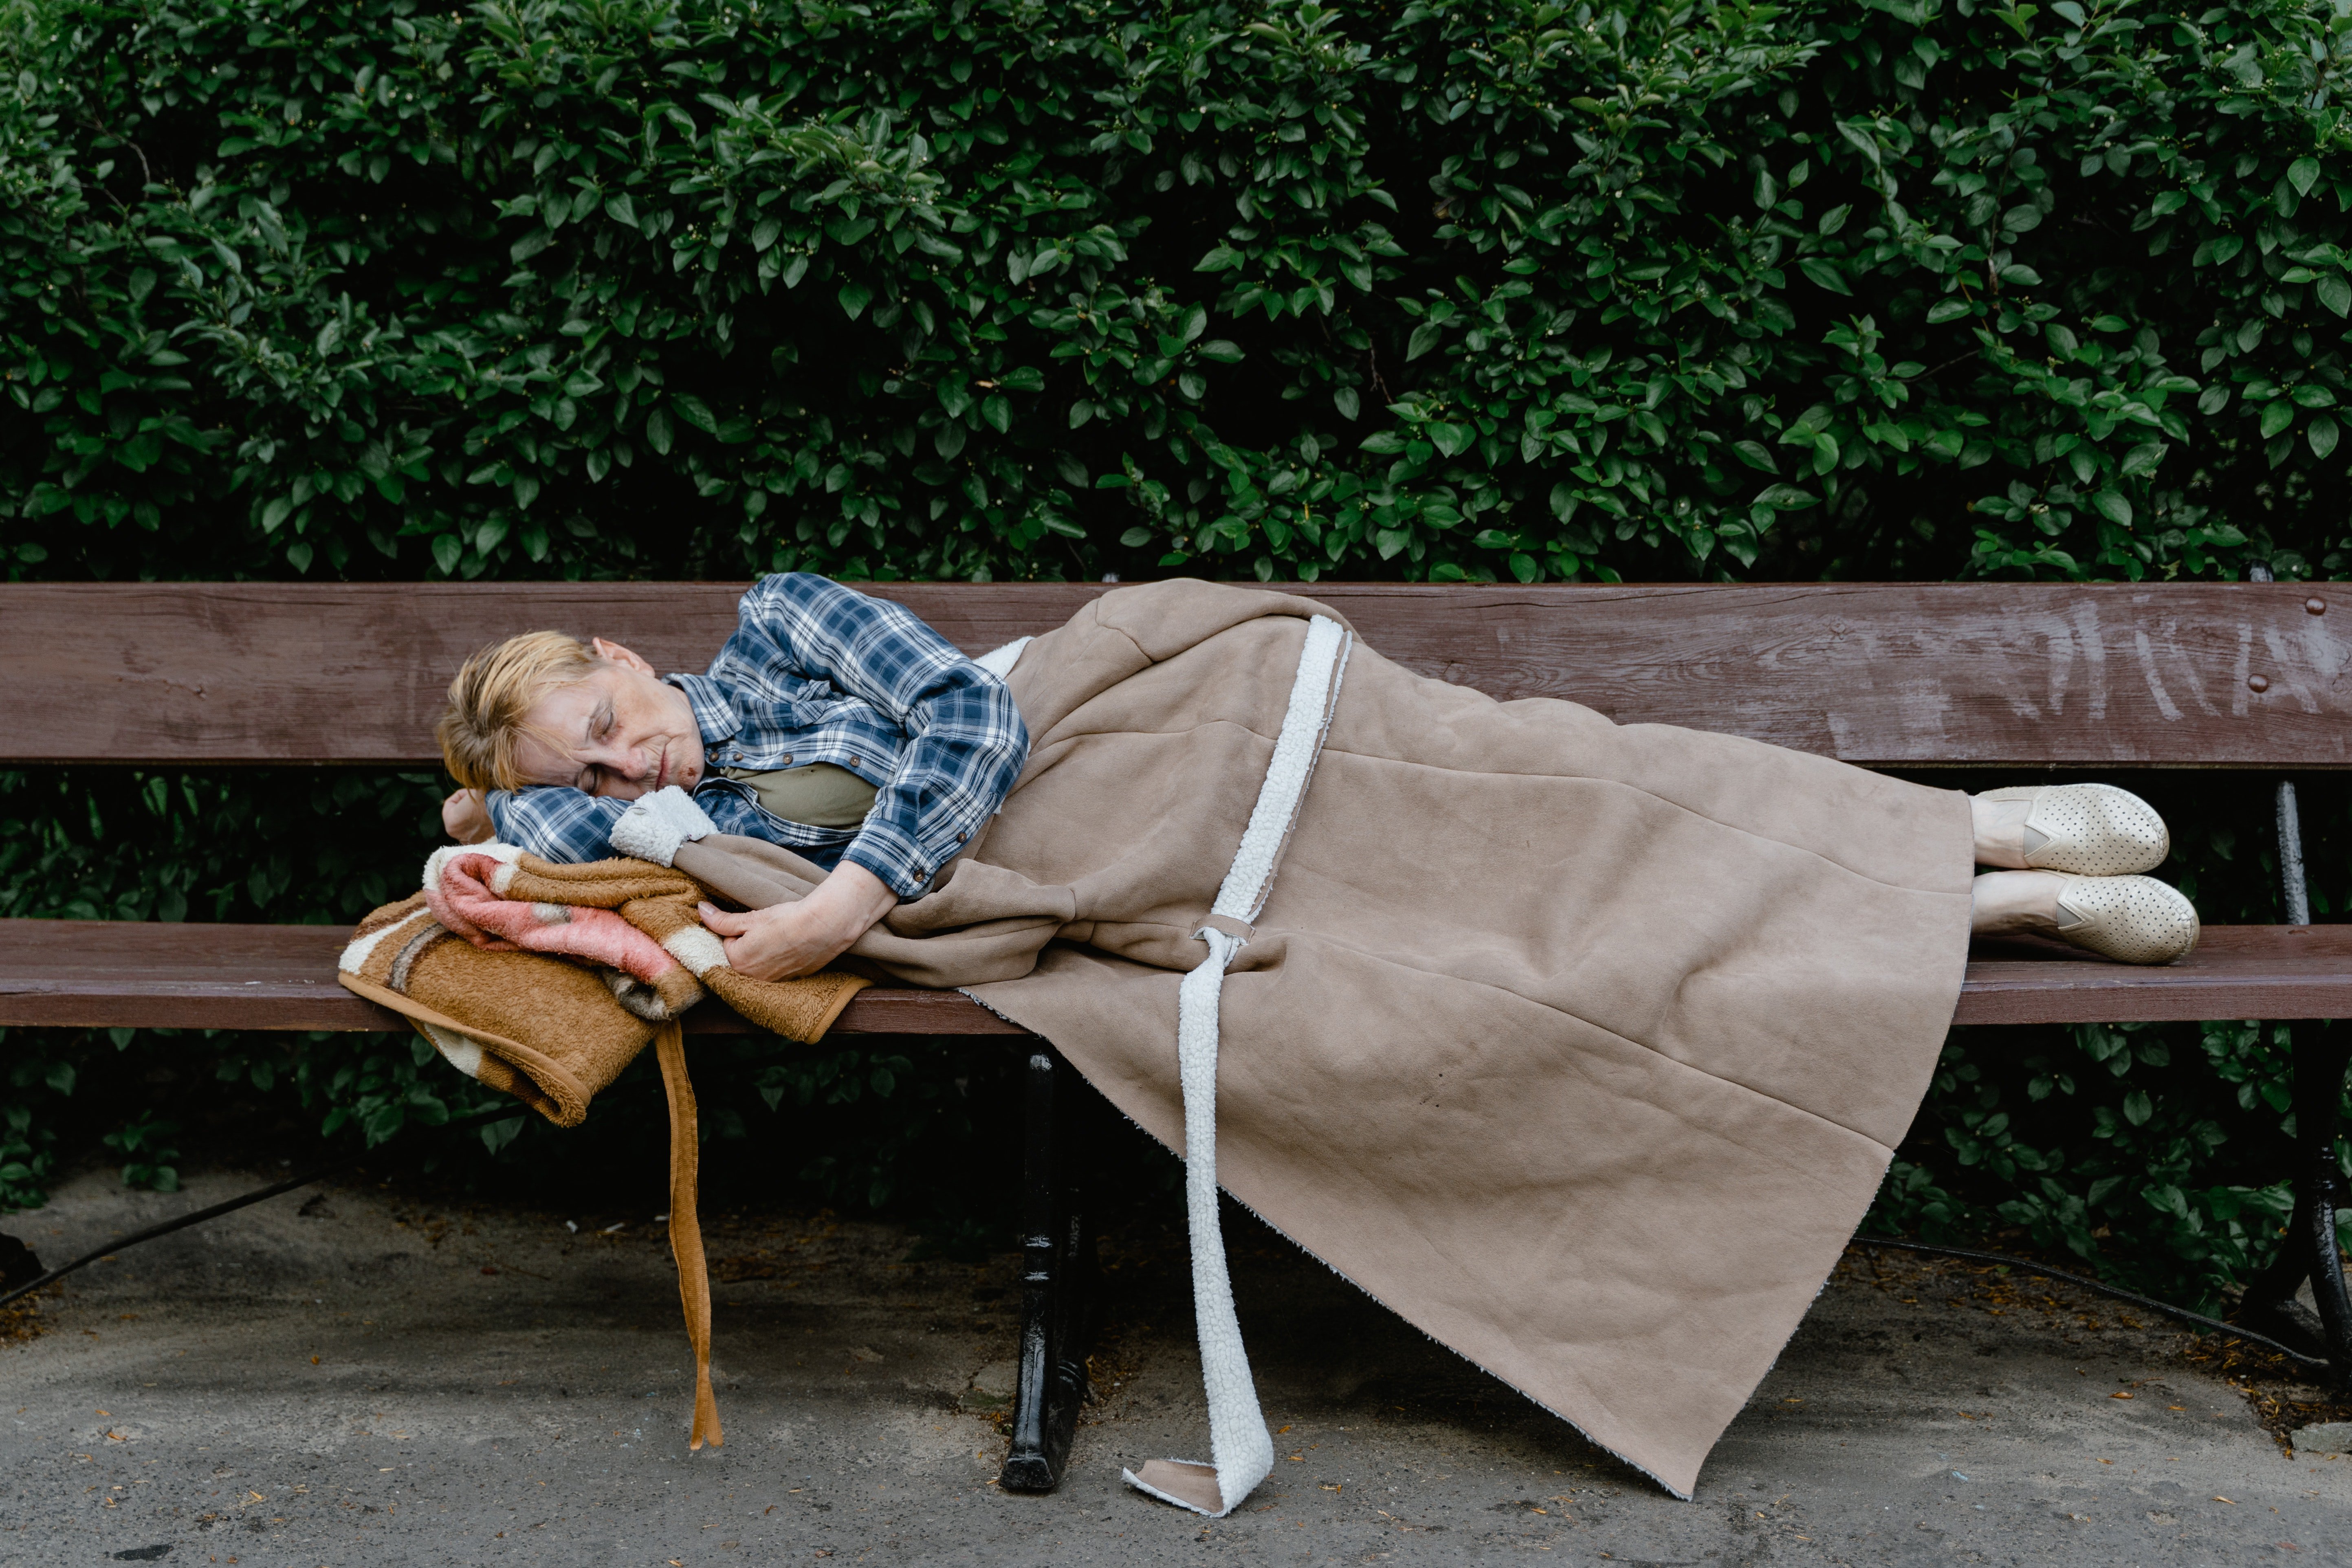 Frau Möller hat im Park geschlafen, nachdem sie aus ihrem Haus geworfen wurde | Quelle: Pexels